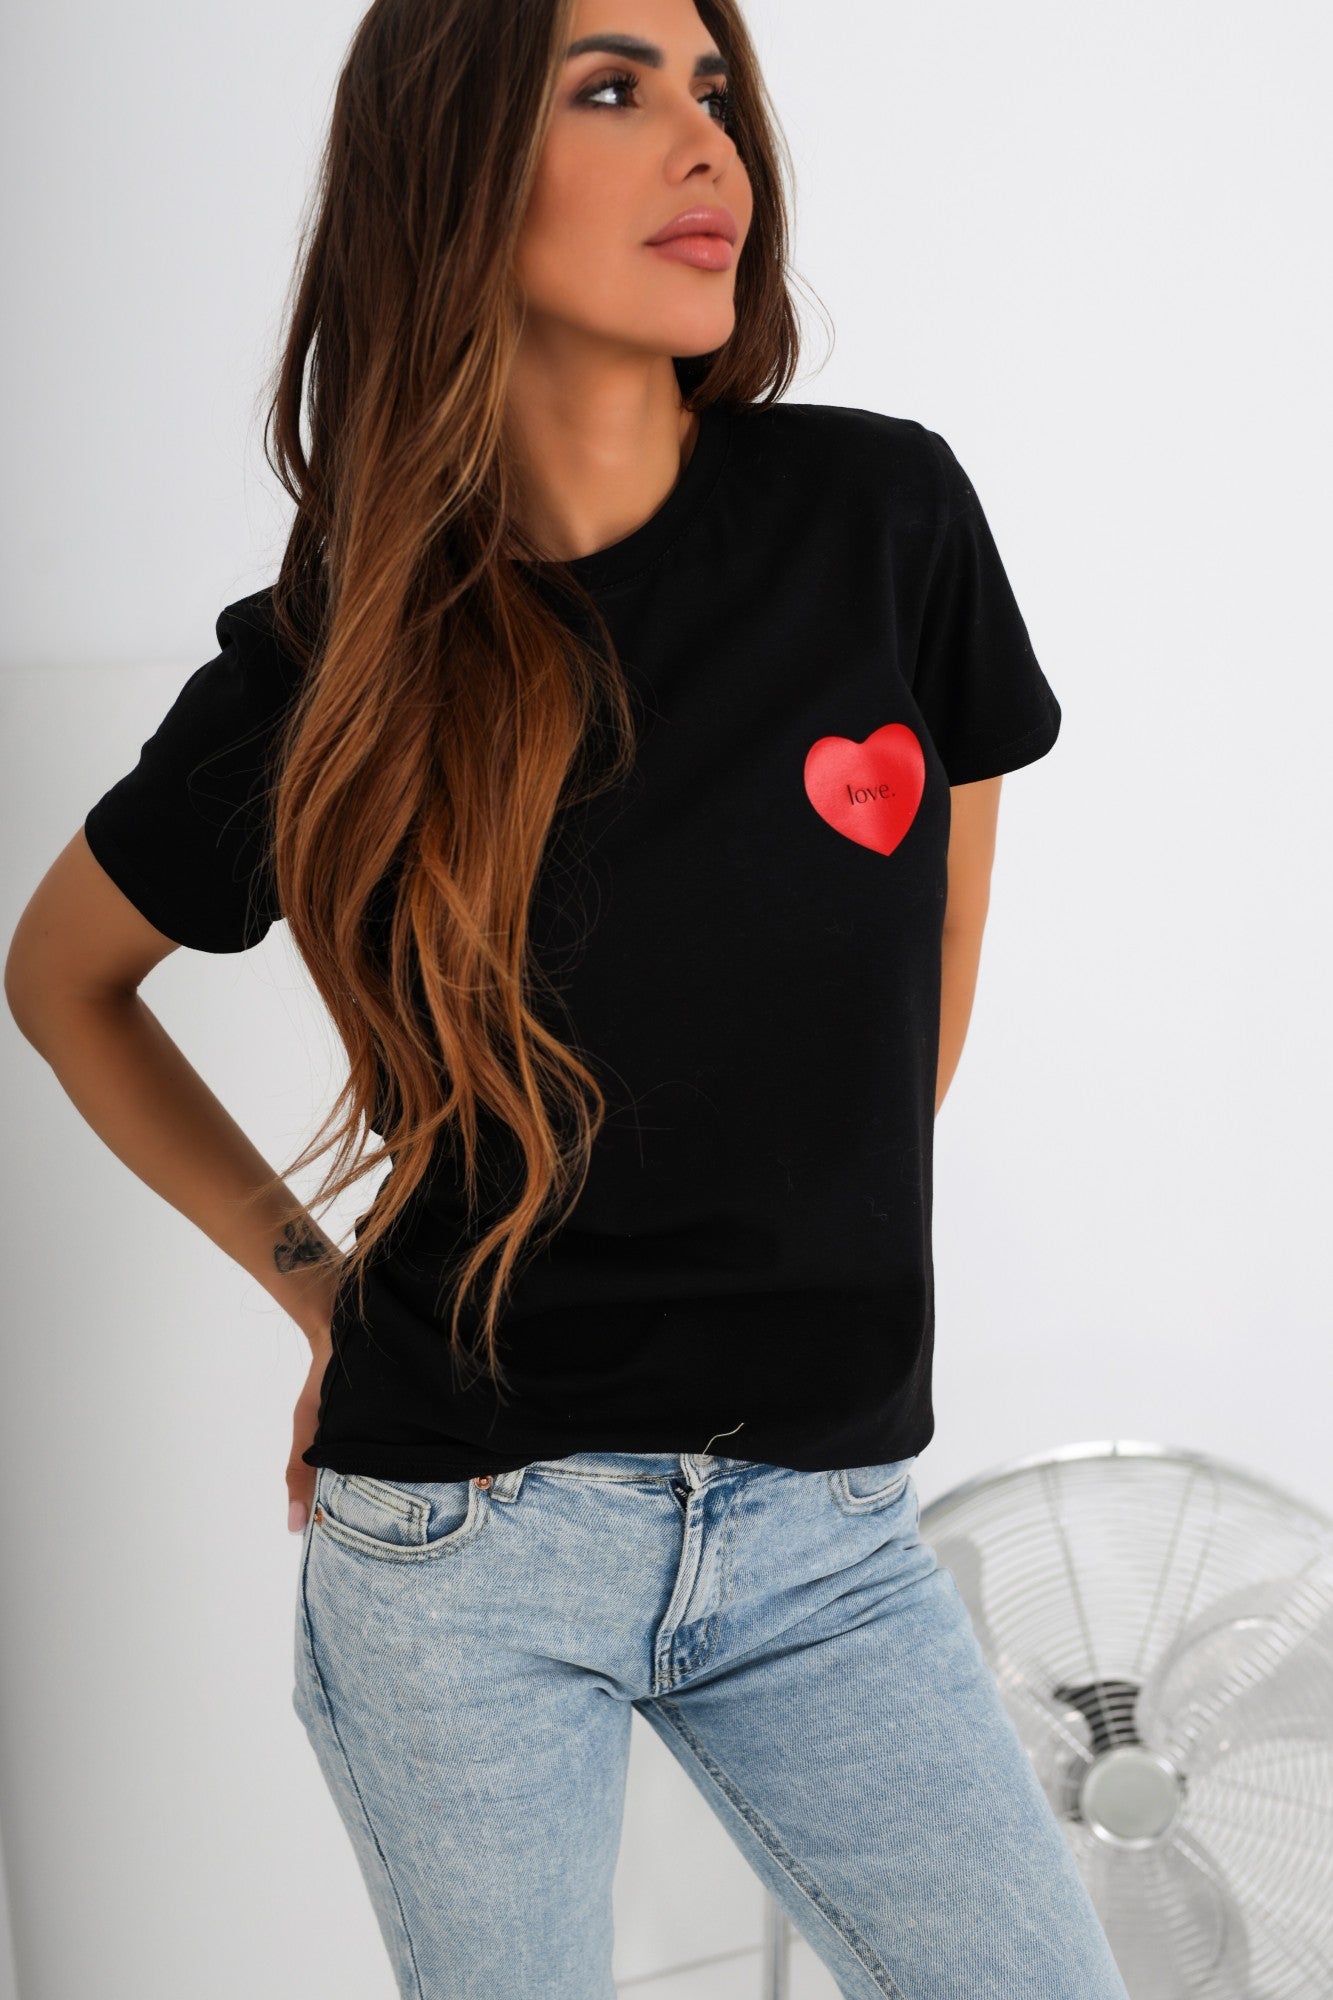 Bavlnené tričko Love čierne